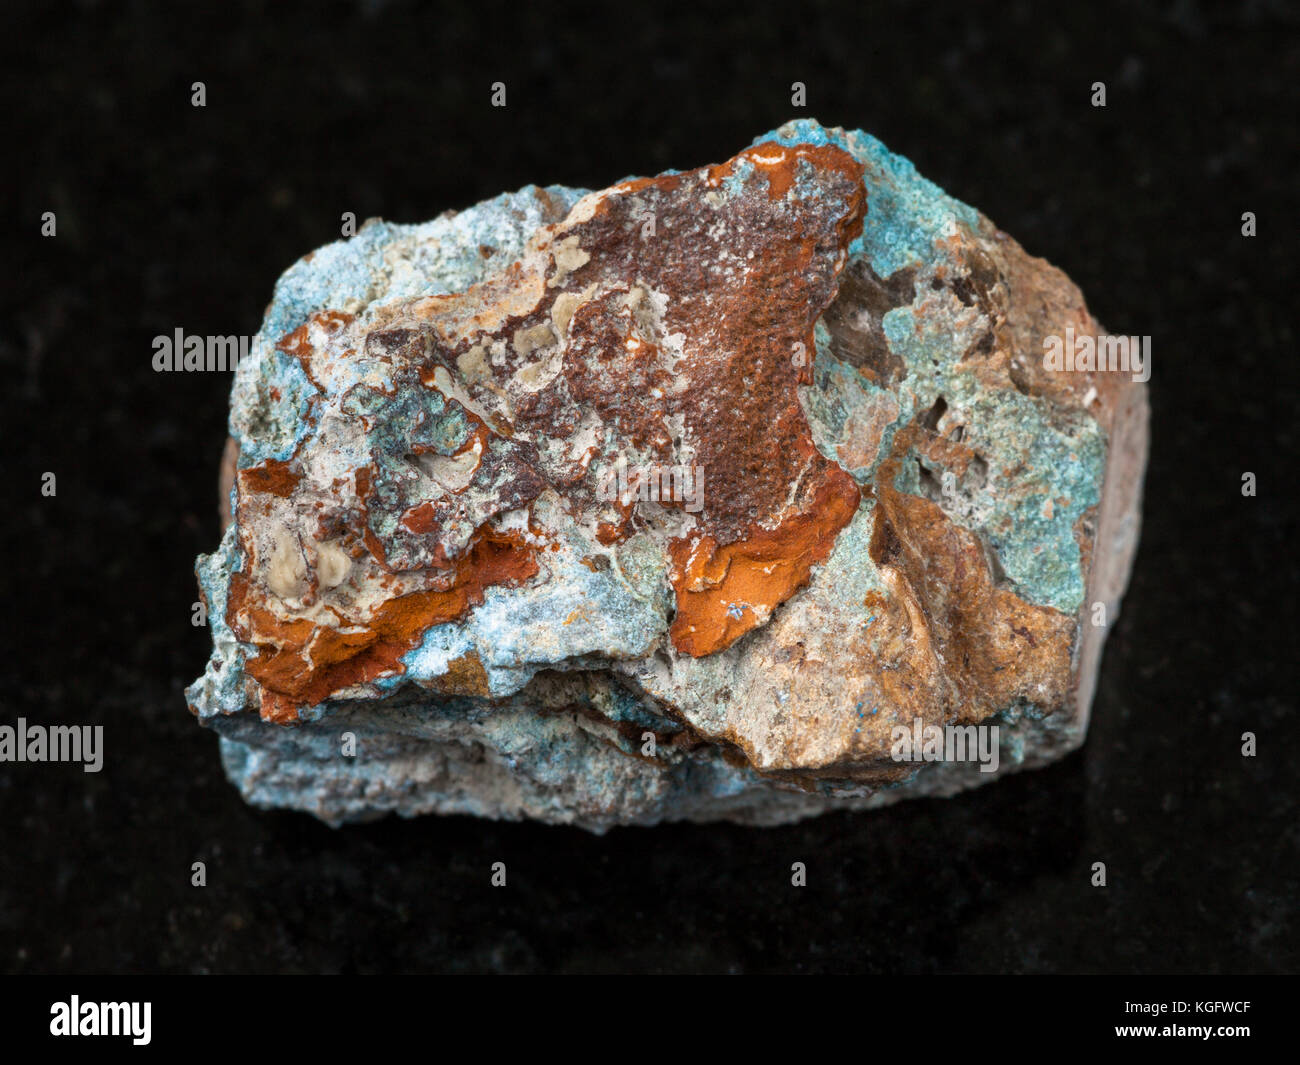 Makroaufnahmen von natürlichen Mineralgestein Muster - Grobe scorodite Stein auf dunklem Granit Hintergrund aus jezkazgan Region, Kasachstan Stockfoto